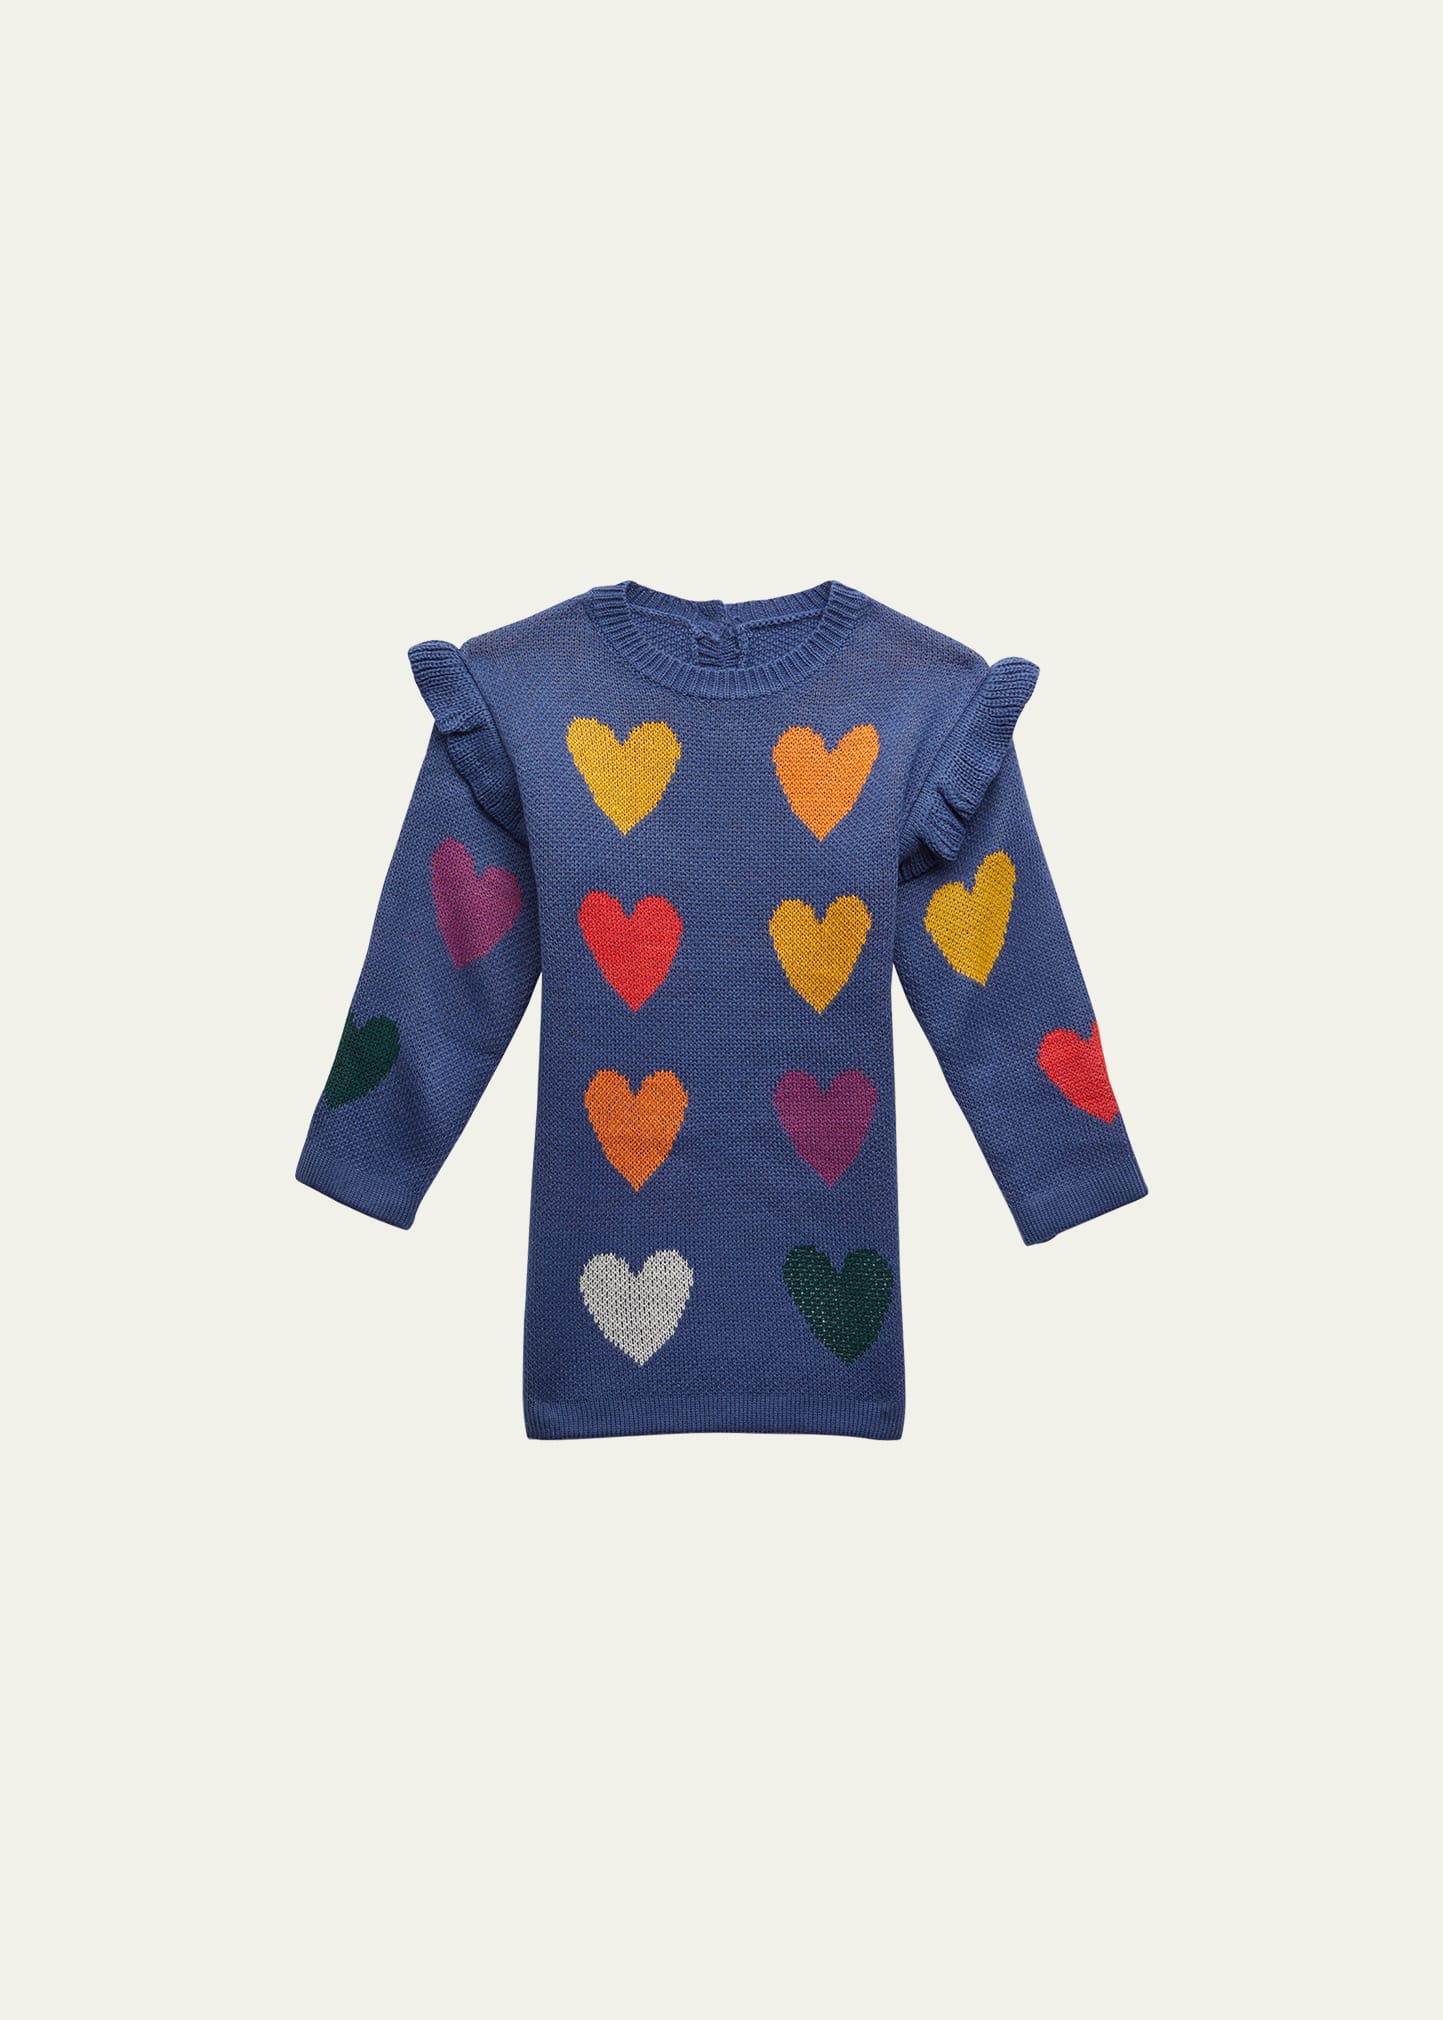 Hannah Banana Girl's Heart Sweater Ruffle Dress, Size 2T-6